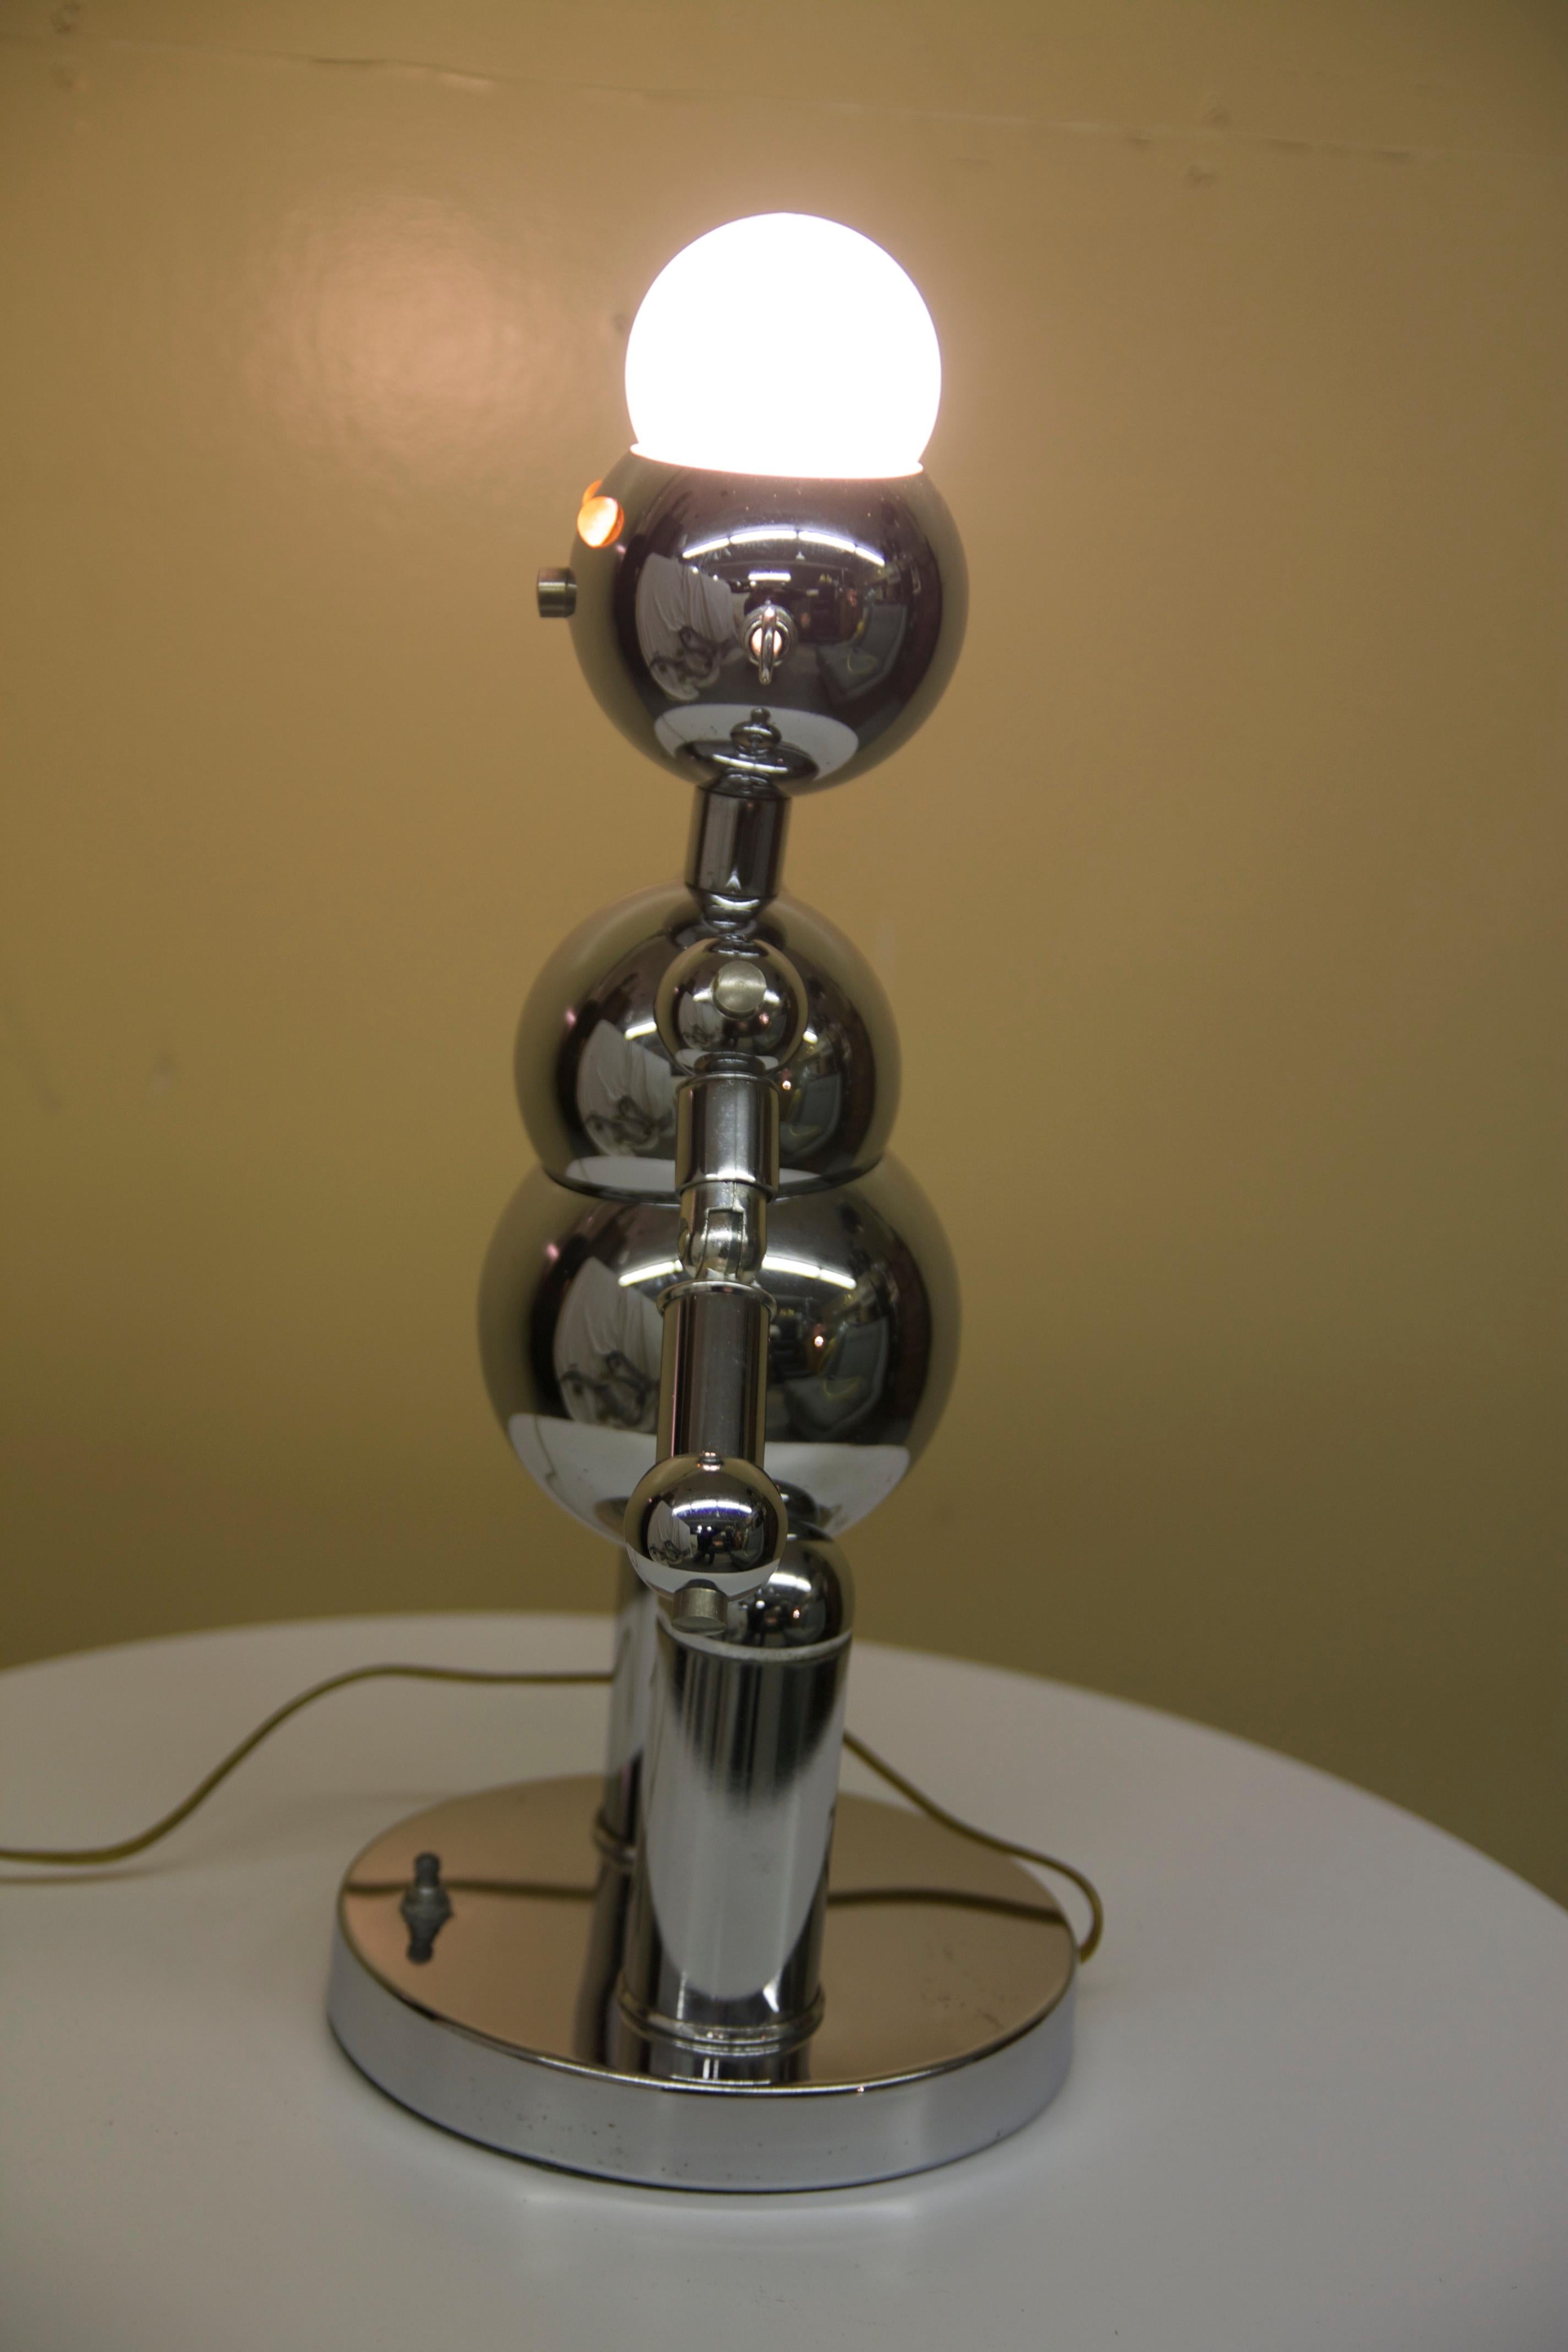 Italian Torino Robot Lamp